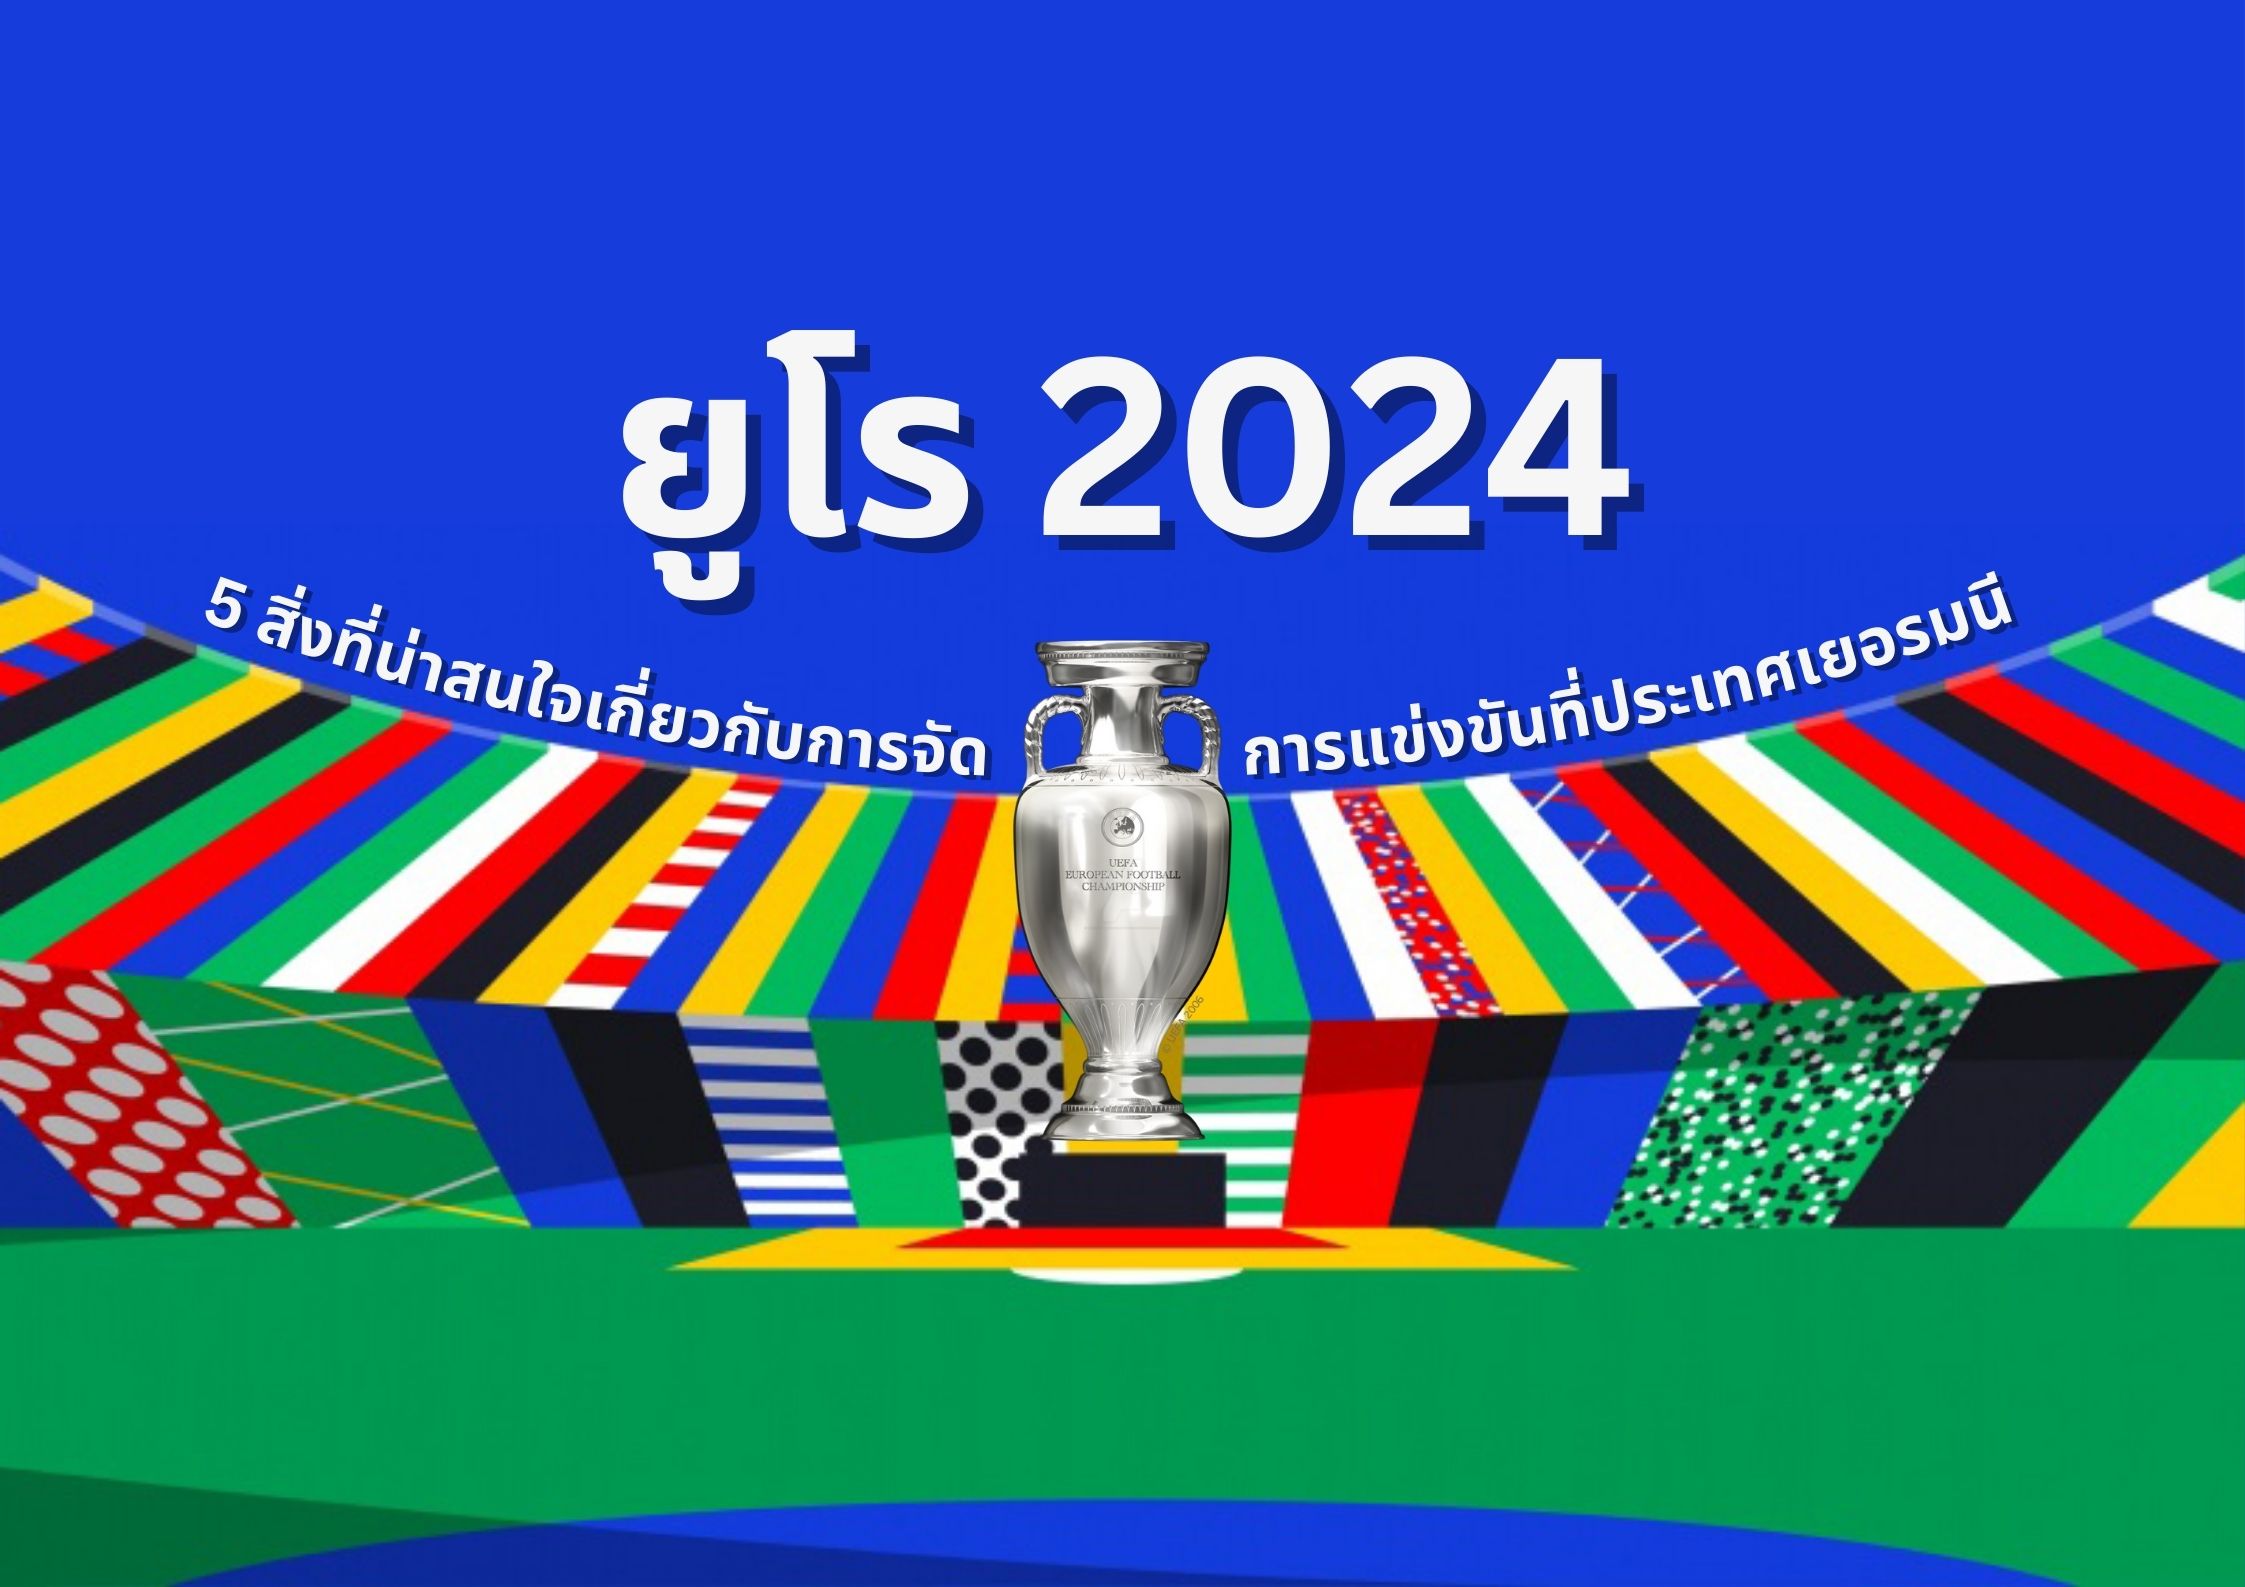 ยูโร 2024 - 5 สิ่งที่น่าสนใจเกี่ยวกับการจัดการแข่งขันที่ประเทศเยอรมนี